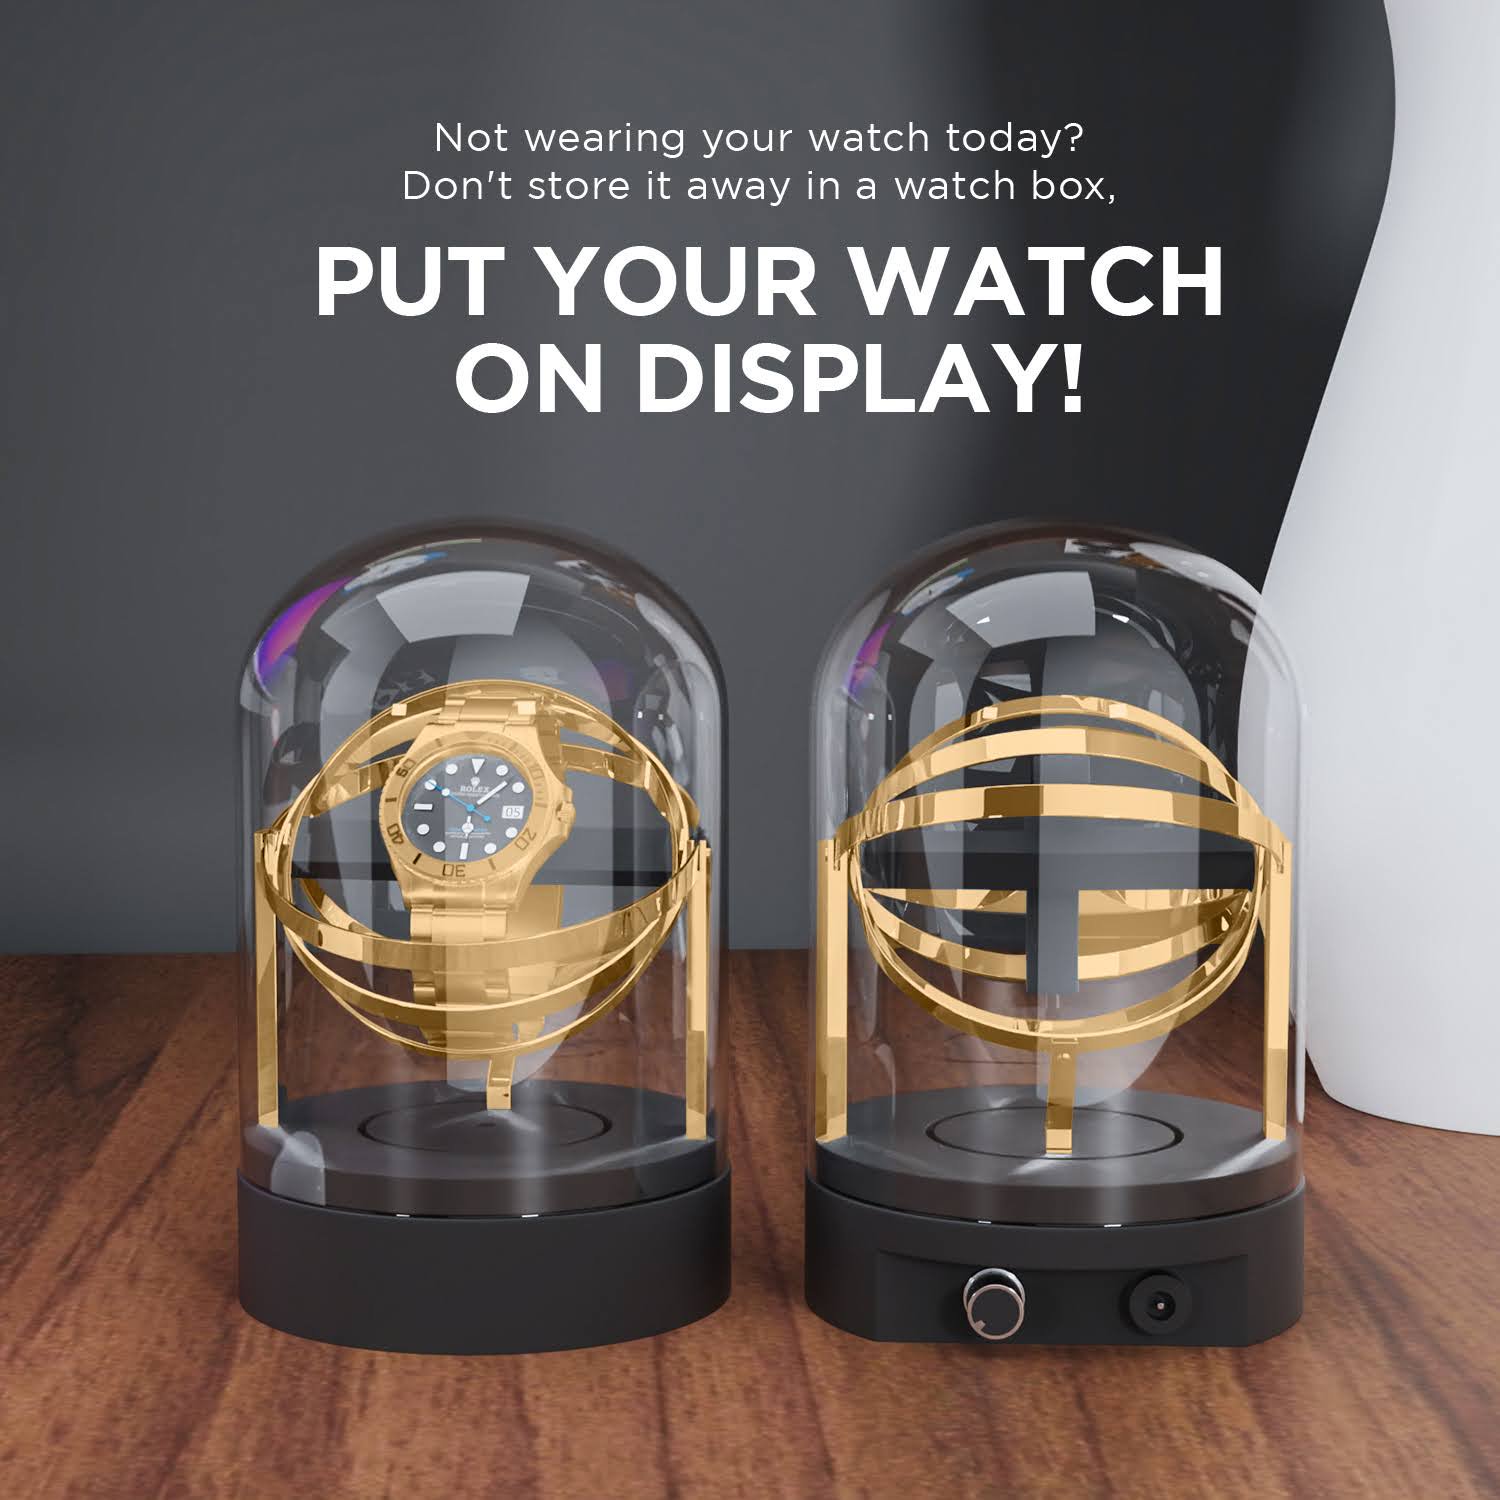 Gold Watch Winder for Rolex Watches - Gyro Orbit Box